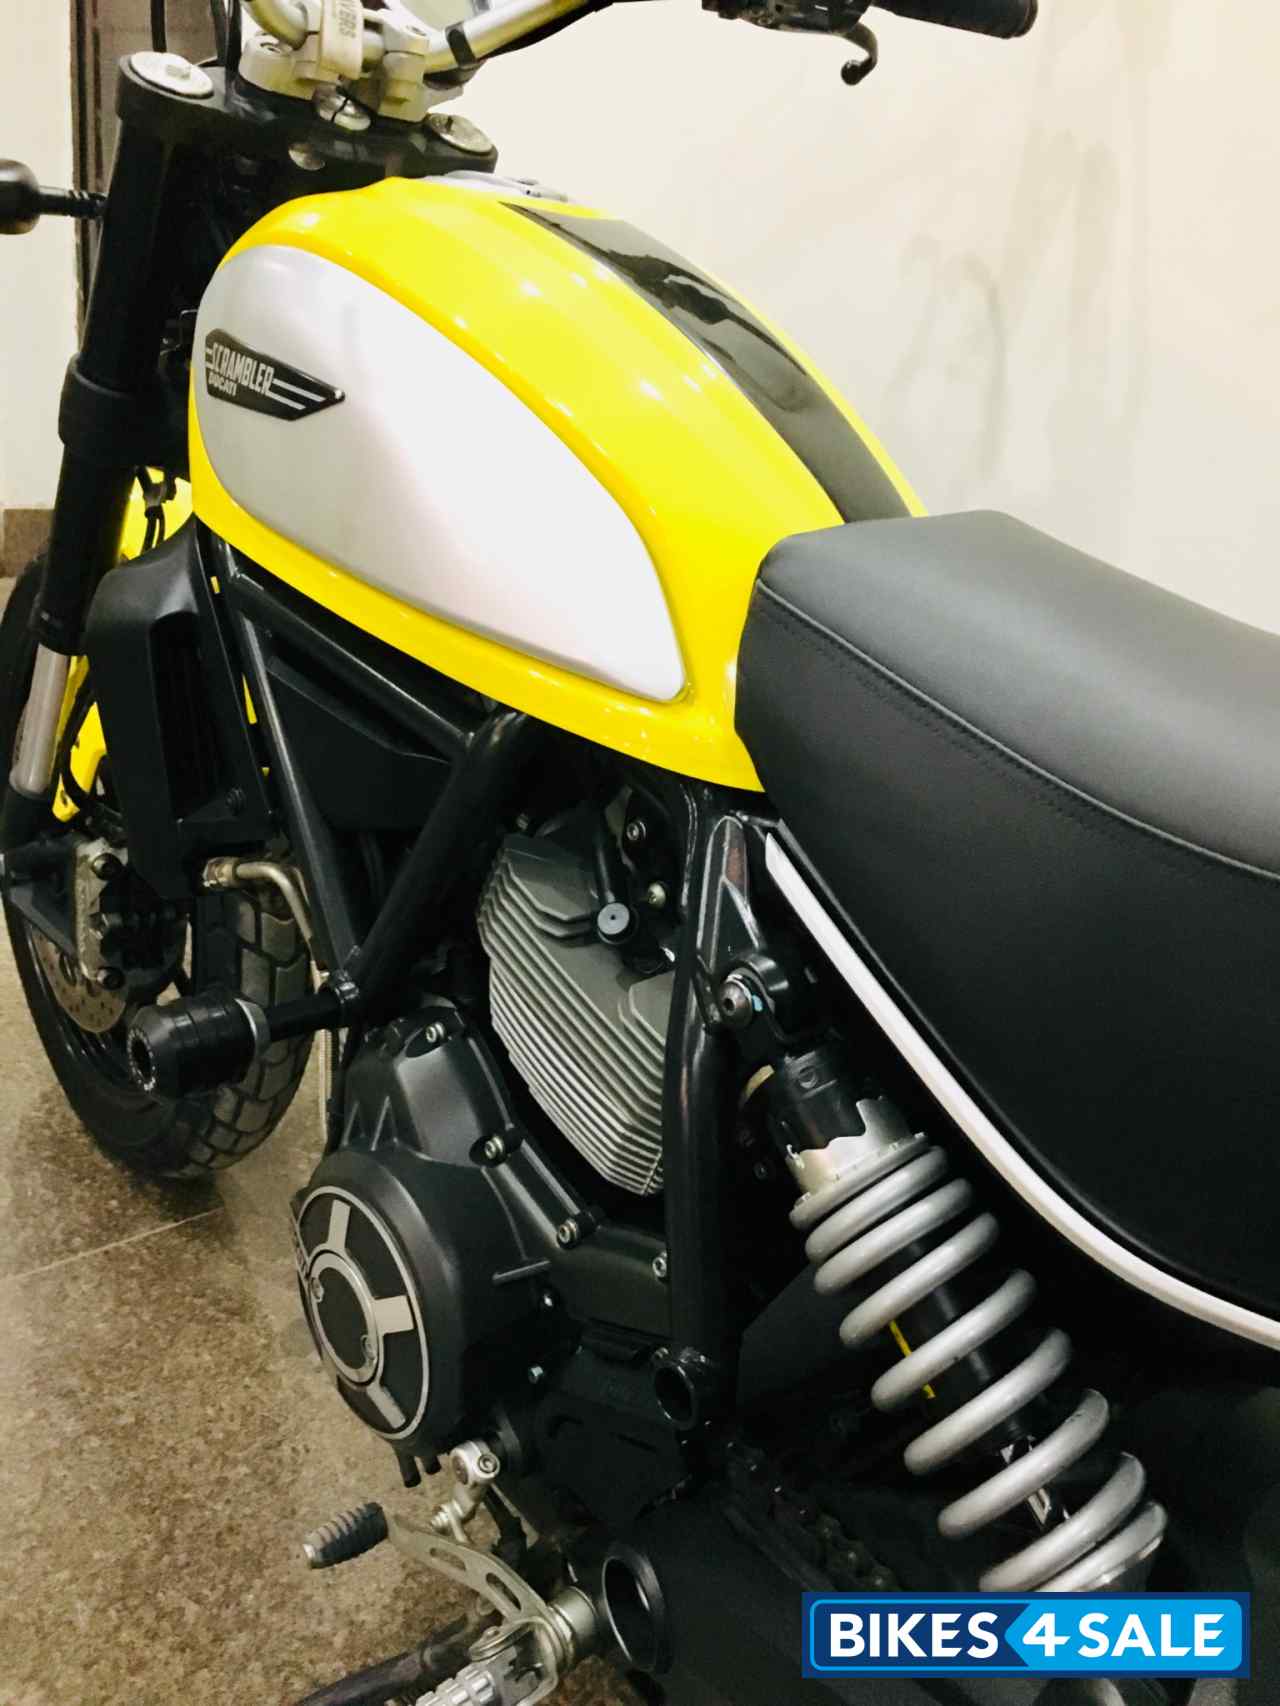 Yellow Ducati Scrambler Icon Picture 8 Bike Id Bike Located In New Delhi Bikes4sale